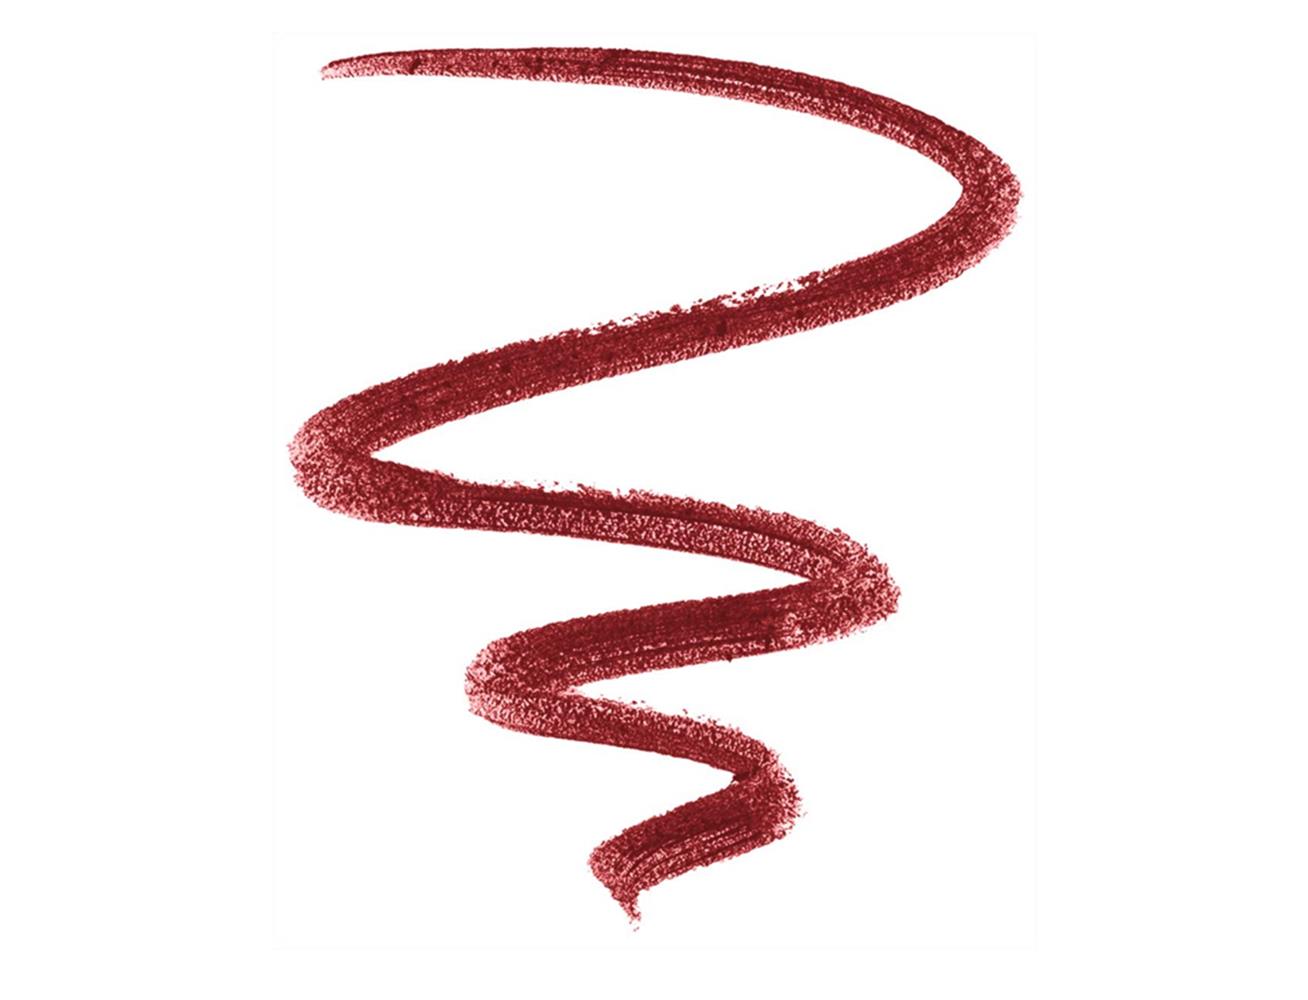 Nars Lip Pencil Velvet Matte Mysterious Red 2477